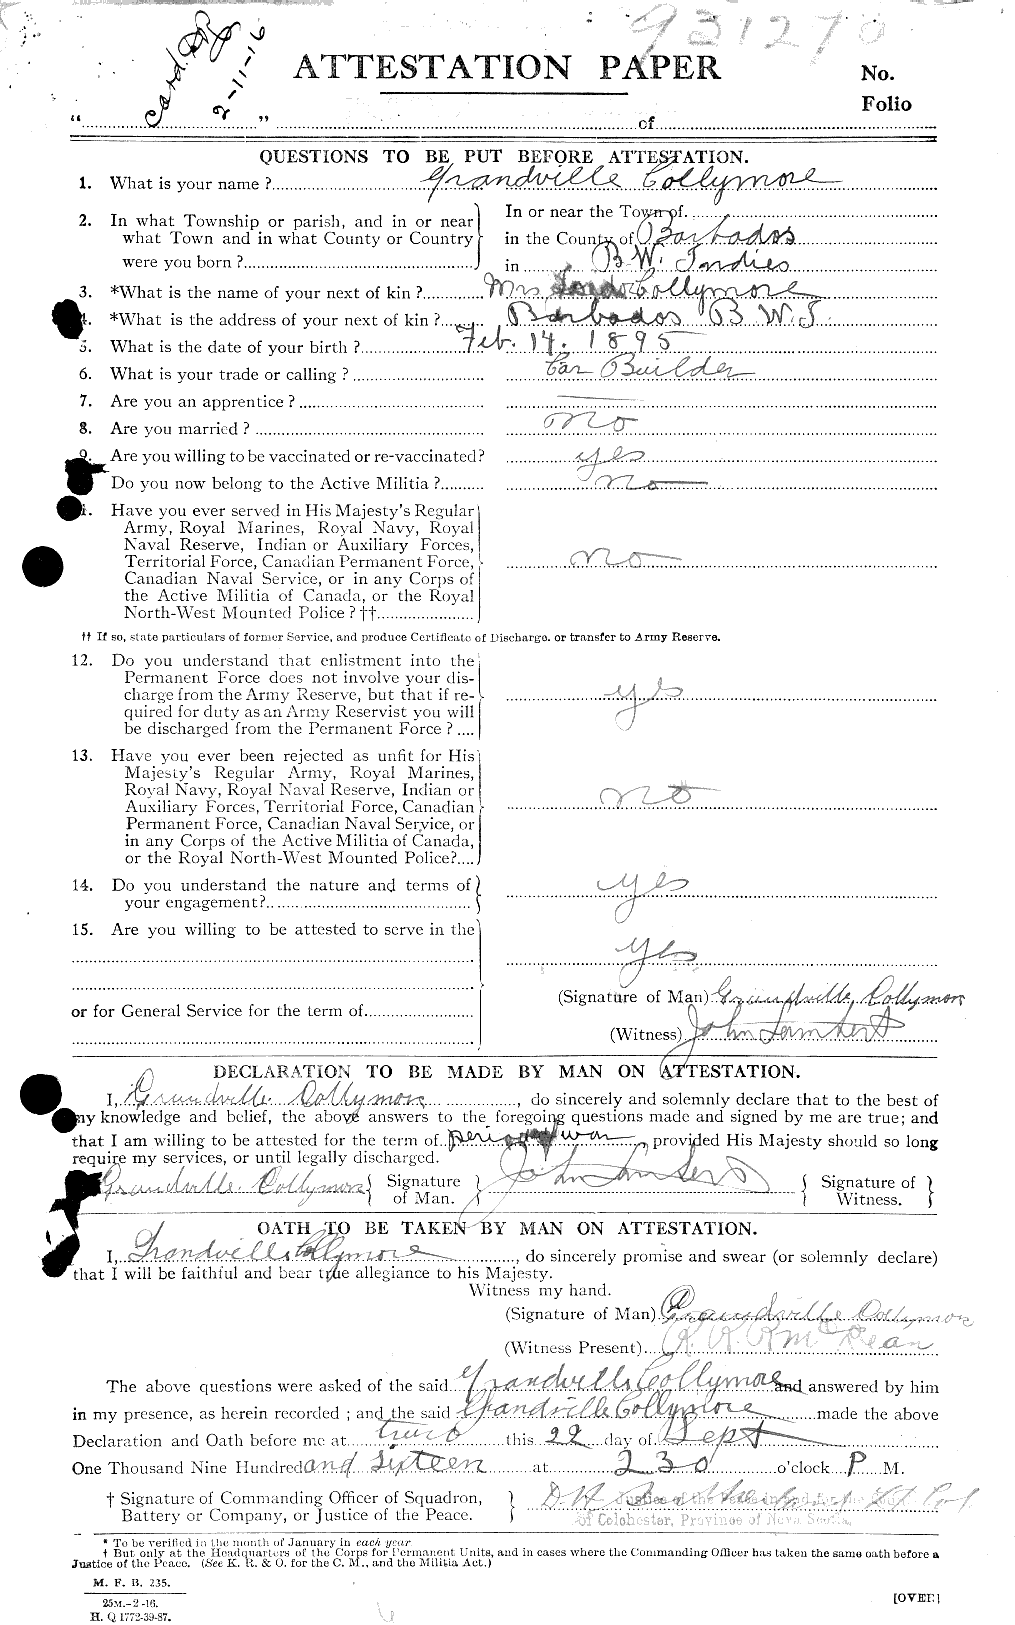 Dossiers du Personnel de la Première Guerre mondiale - CEC 040755a